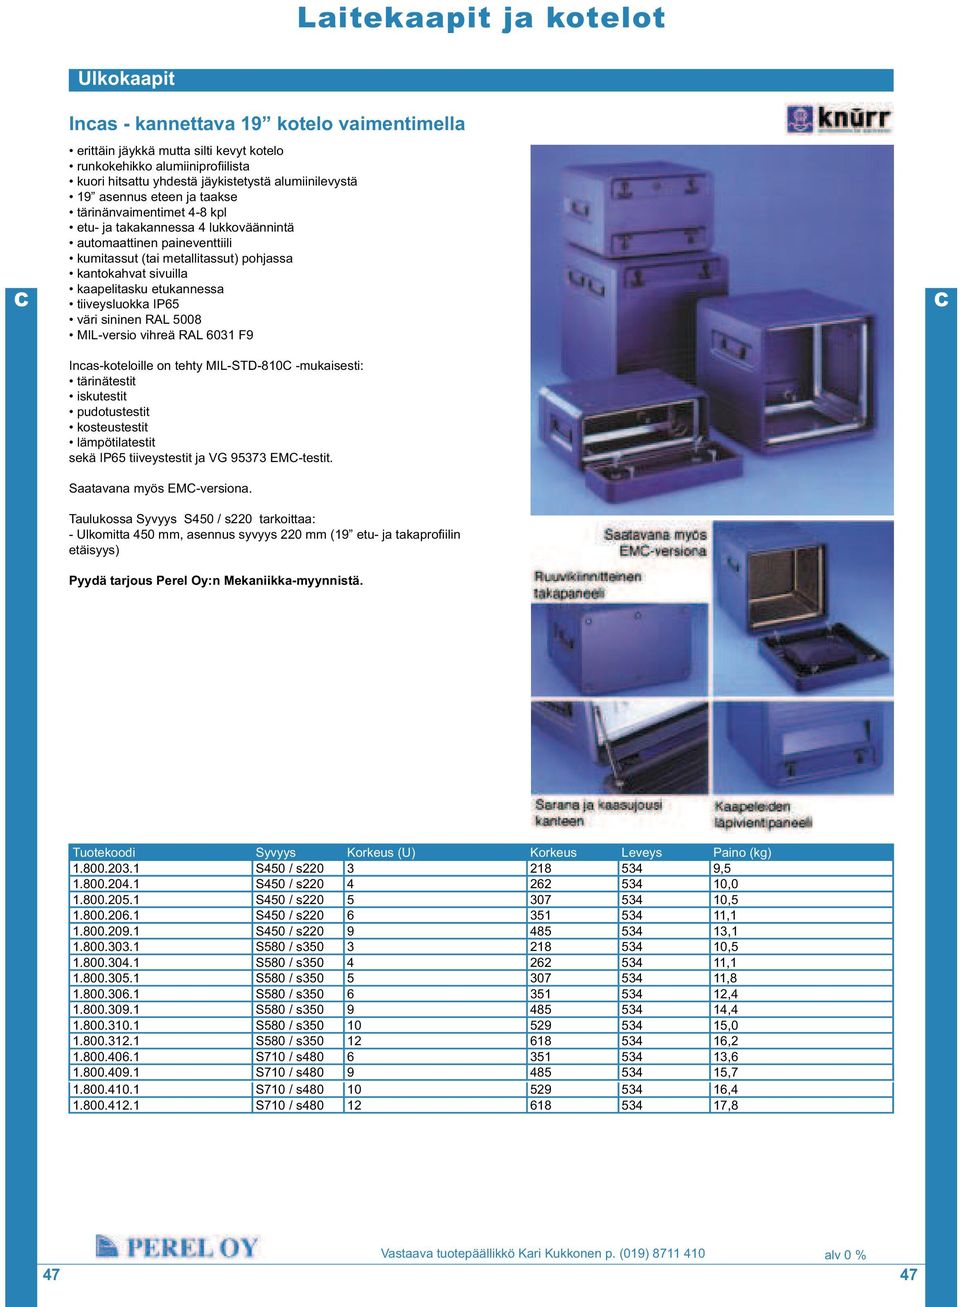 tiiveysluokka IP65 väri sininen RAL 5008 MIL-versio vihreä RAL 6031 F9 Incas-koteloille on tehty MIL-STD-810 -mukaisesti: tärinätestit iskutestit pudotustestit kosteustestit lämpötilatestit sekä IP65